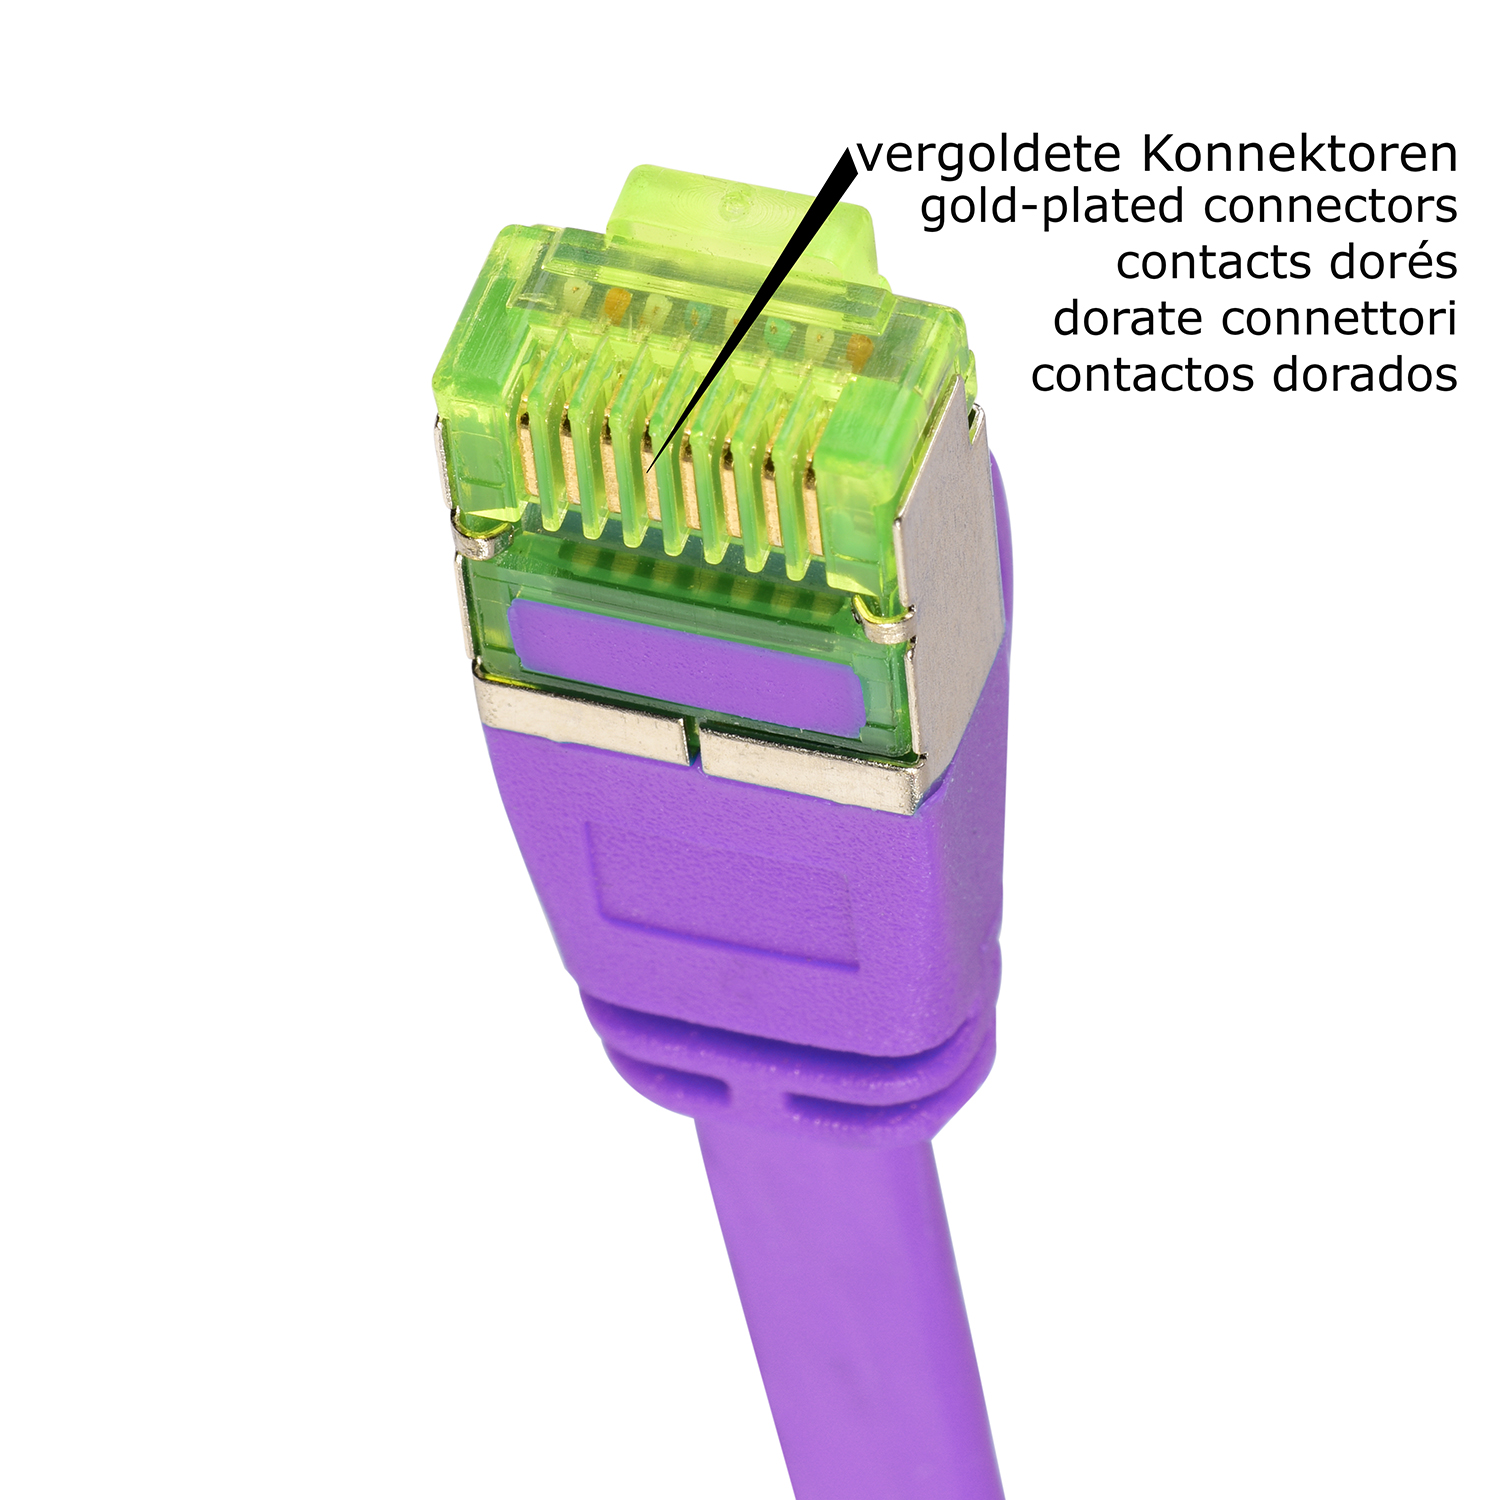 U/FTP 40 m Flachkabel GBit, TPFNET 40m violett, 10 Netzwerkkabel, / Patchkabel